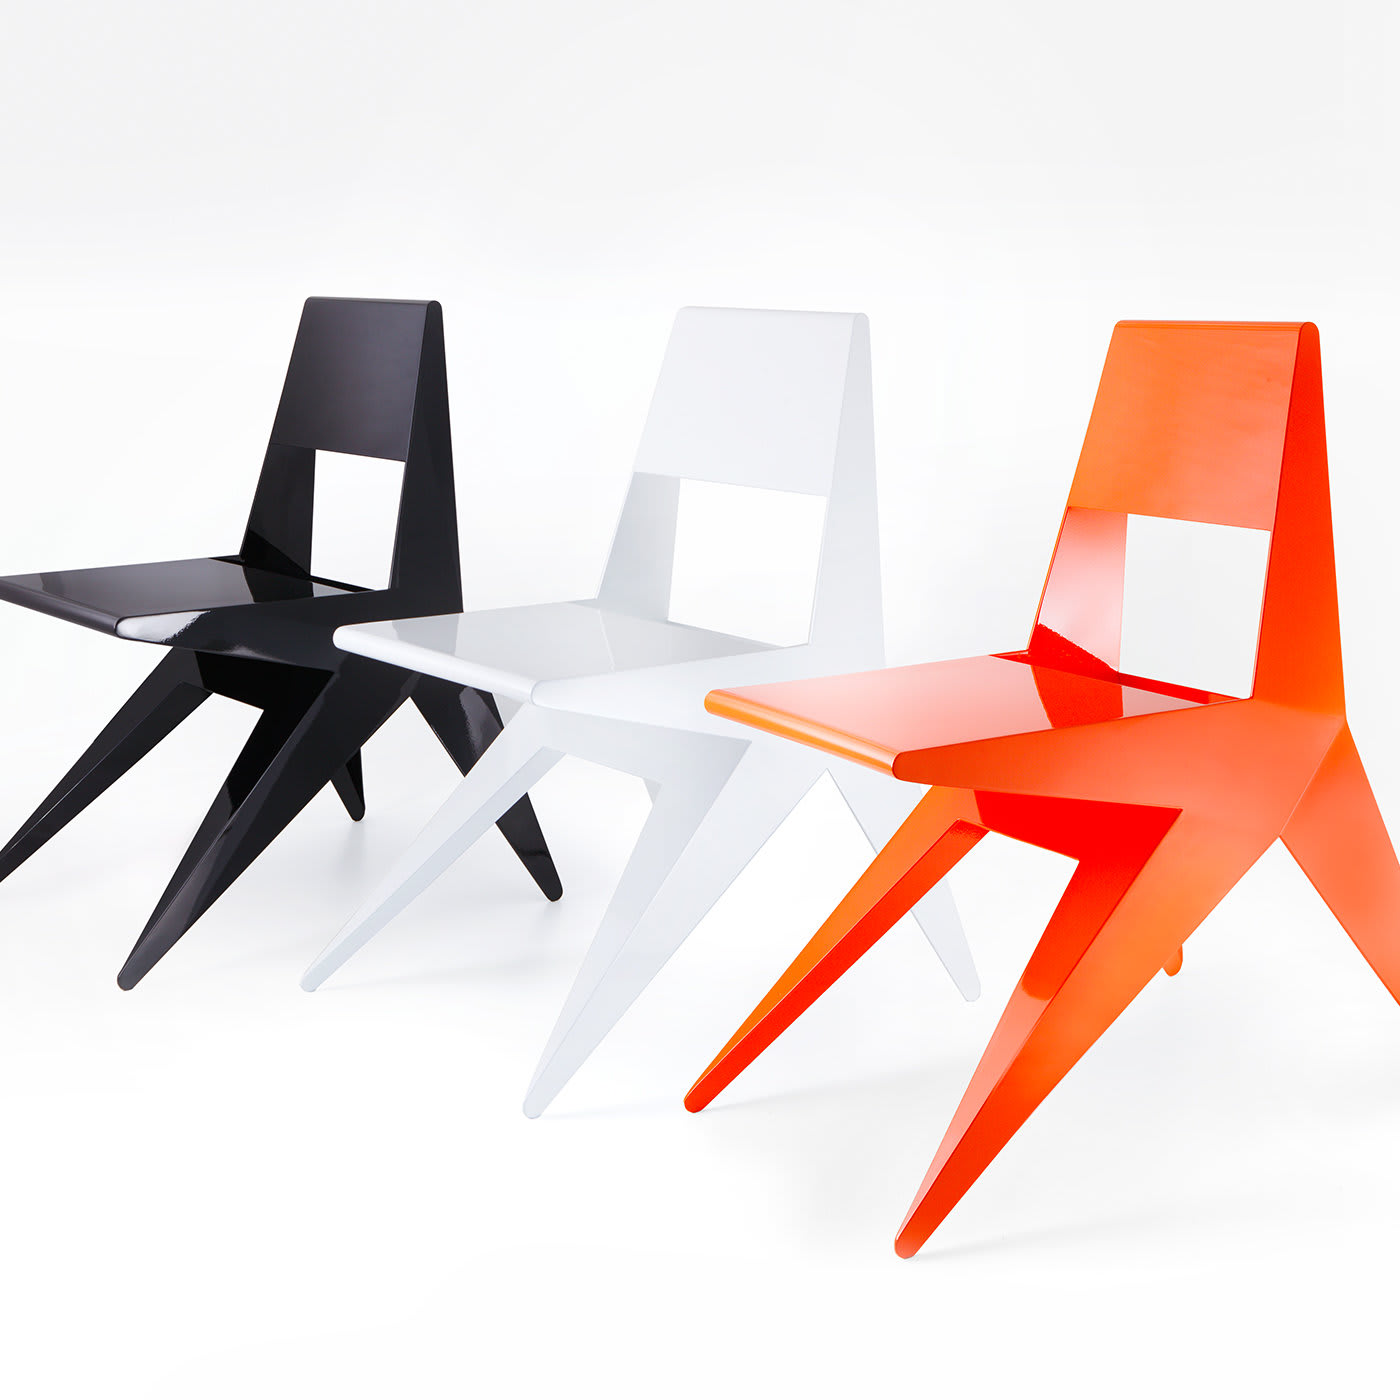 Star Black Chair by Antonio Pio Saracino - Lamberti Design